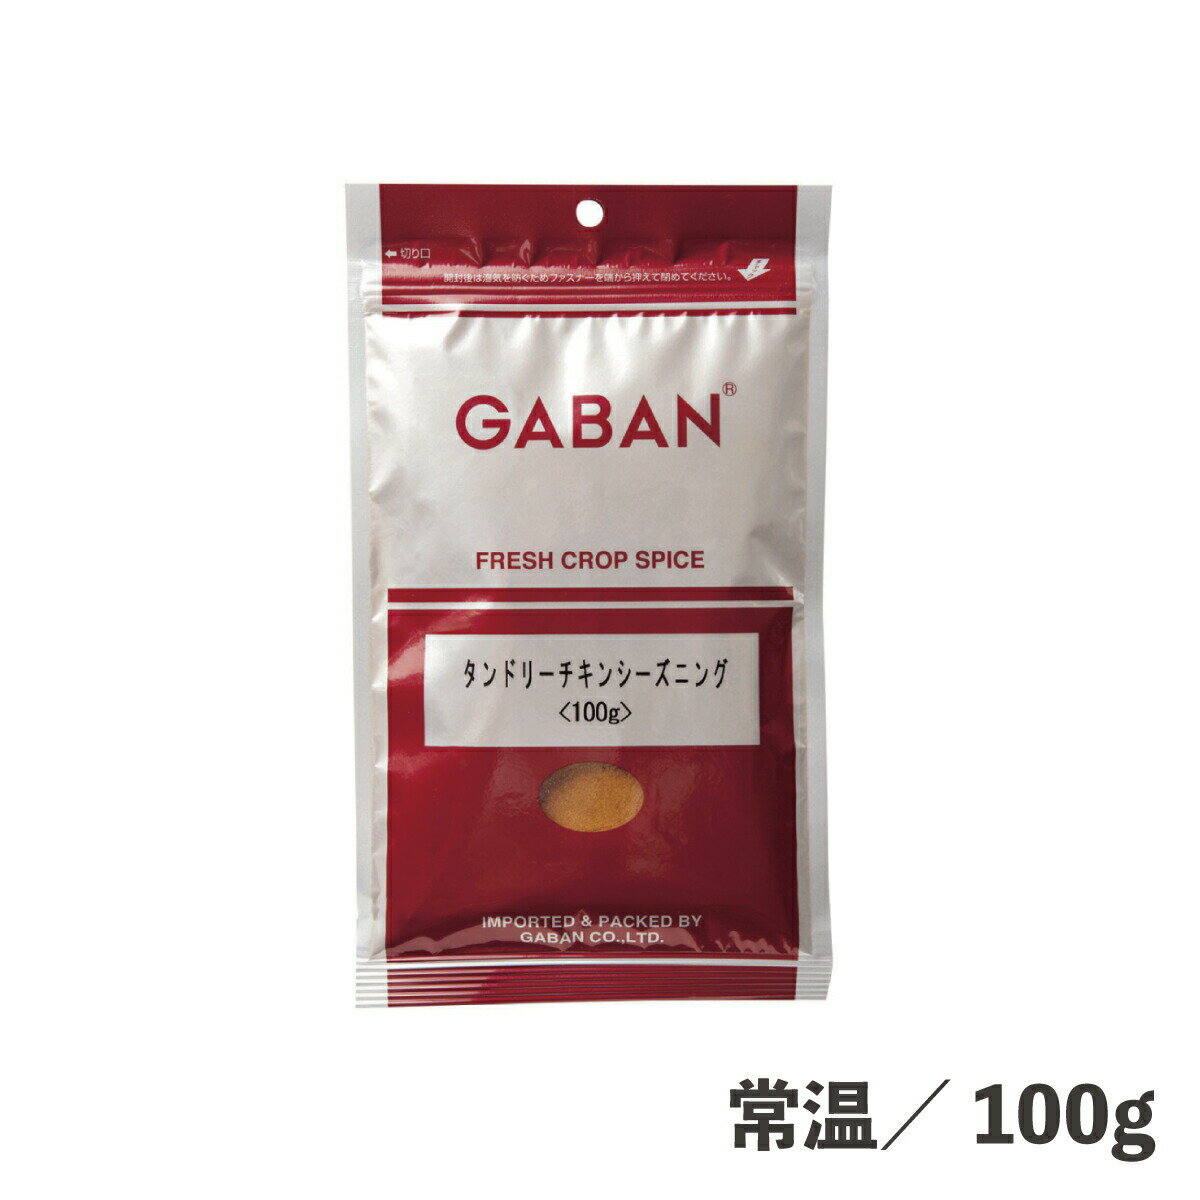 GABAN タンドリーチキンシーズニング 袋 100g 常温 調味料 シーズニング スパイス タンドリーチキン 魚料理 肉料理 スパイシー やみつき ギャバン GABAN 簡単 便利